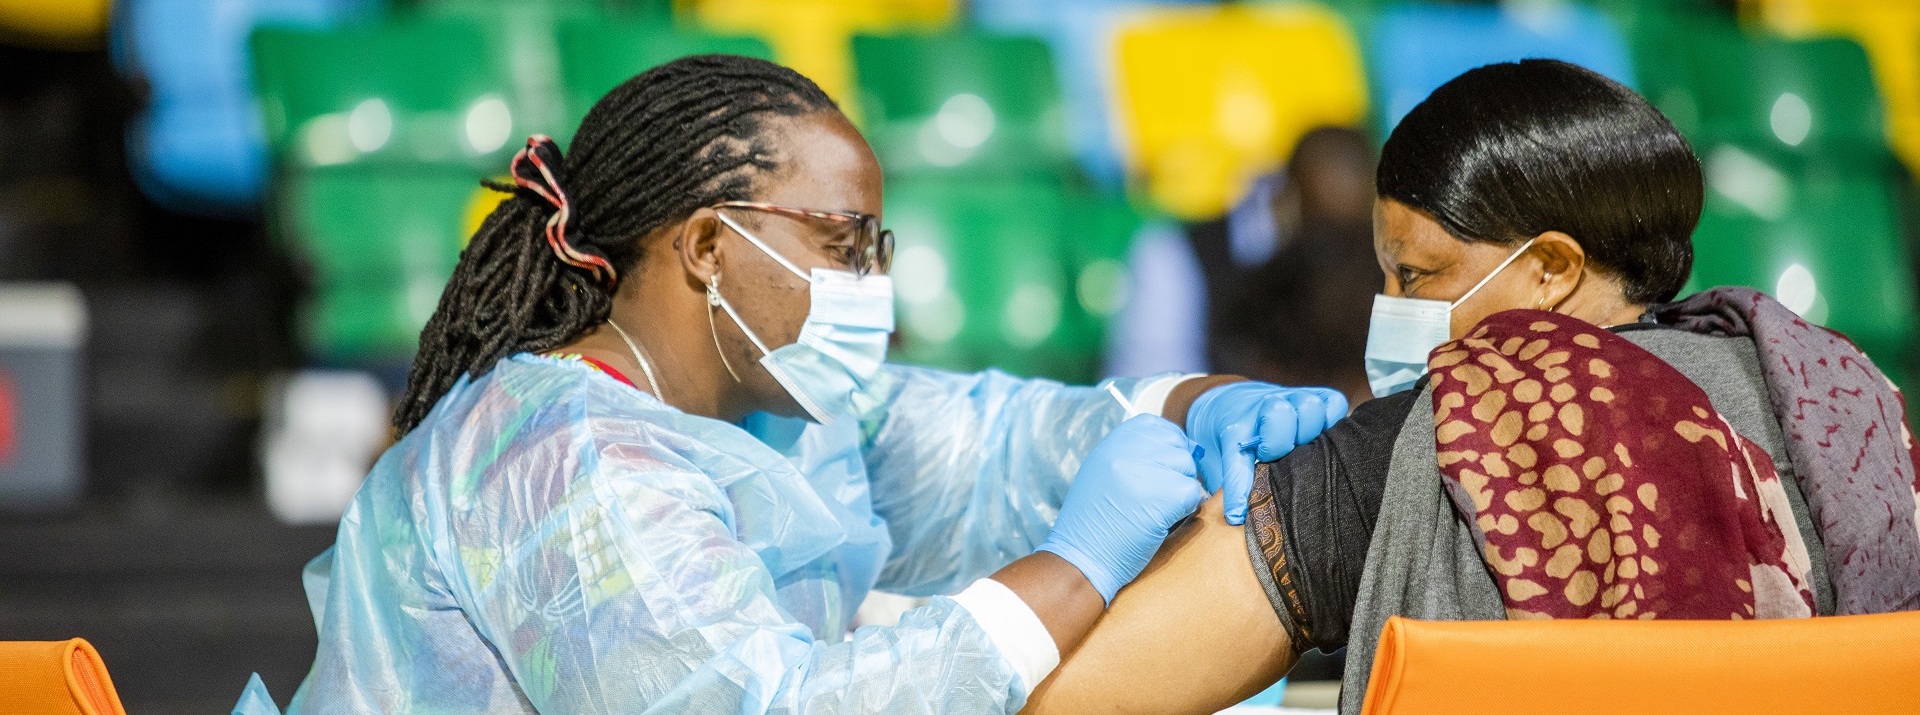 Quinze pays africains ont atteint l’objectif de 10 % de vaccination de la population contre la COVID-19 